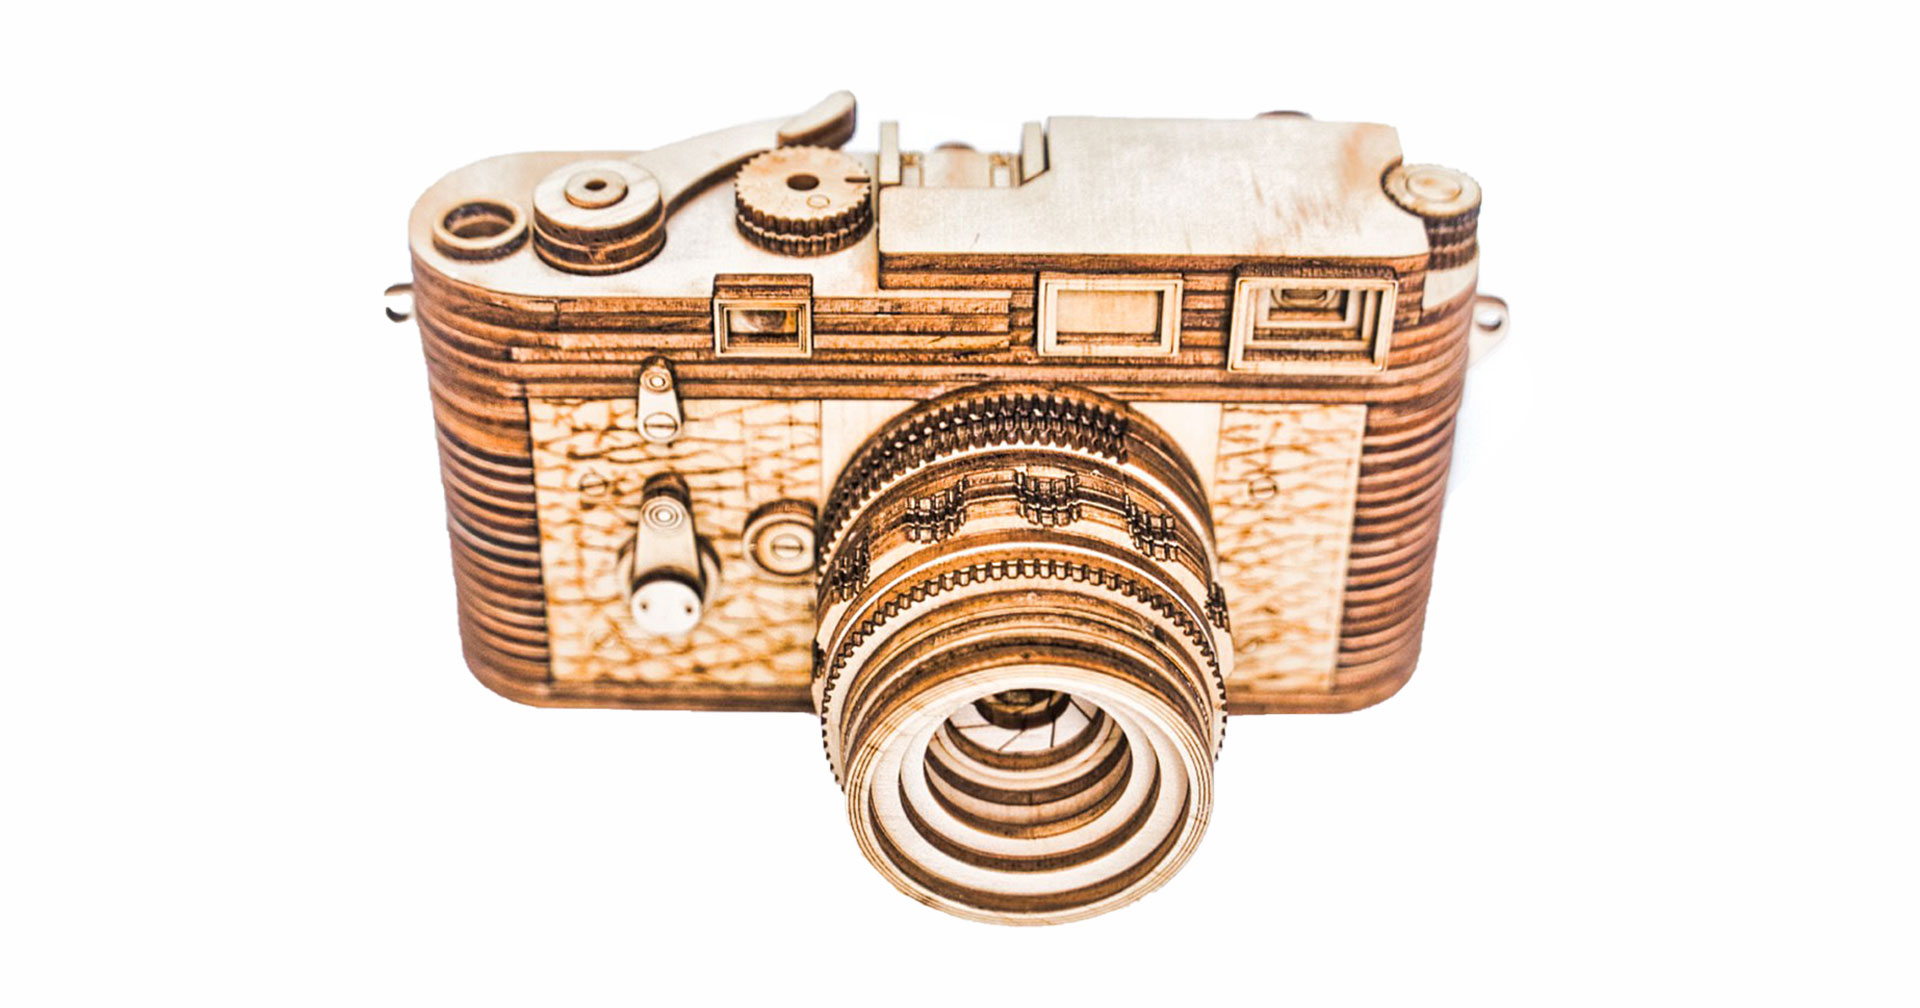 ใครว่ากล้องไลก้าแพง โมเดลไม้กล้อง Leica M3 ในราคาไม่ถึง 3 พันบาท!